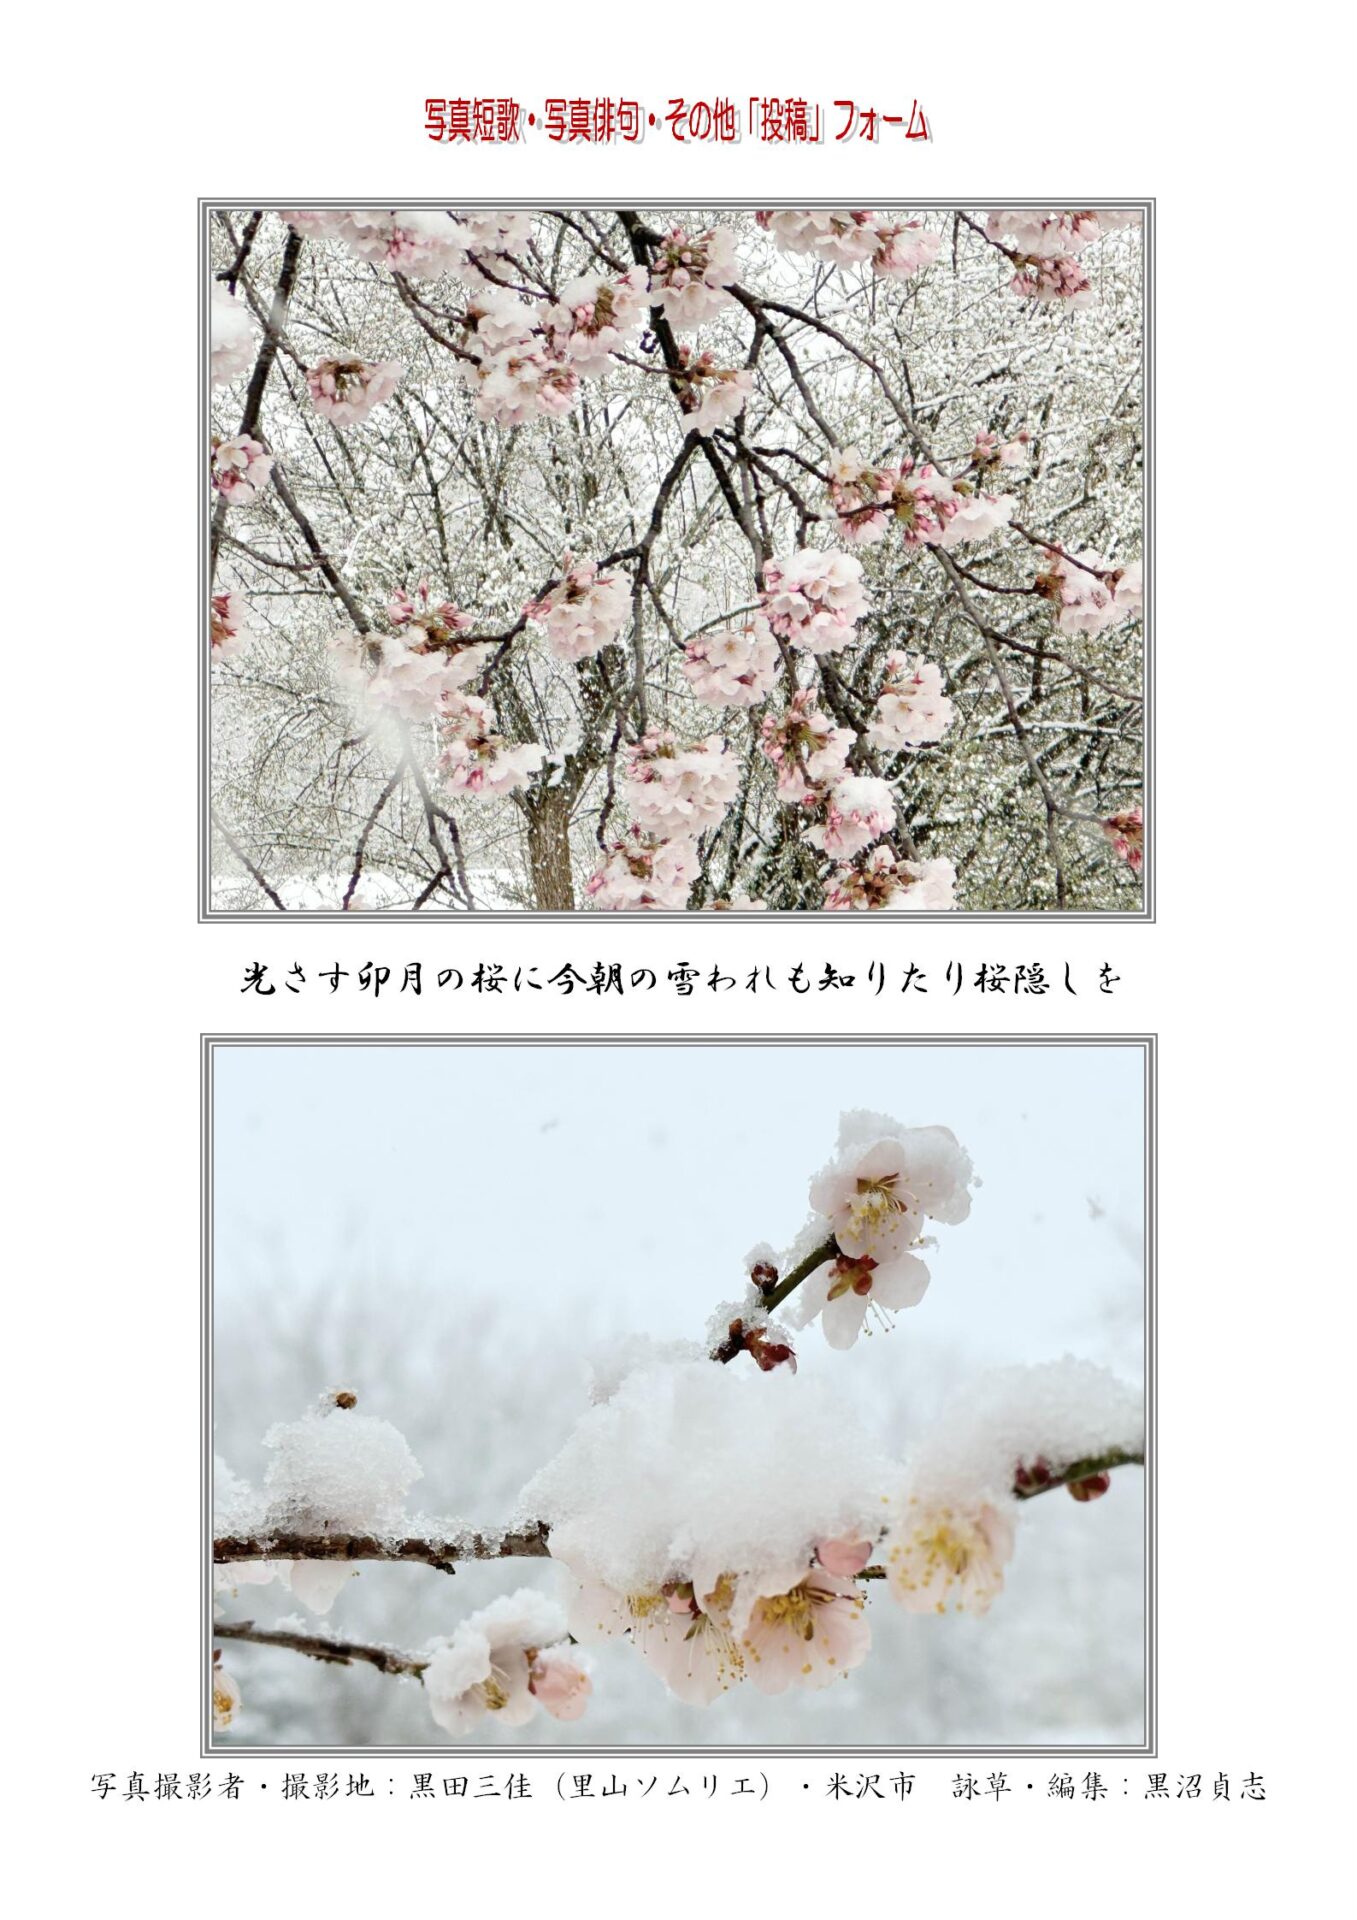 光さす卯月の桜に今朝の雪われも知りたり桜隠しを